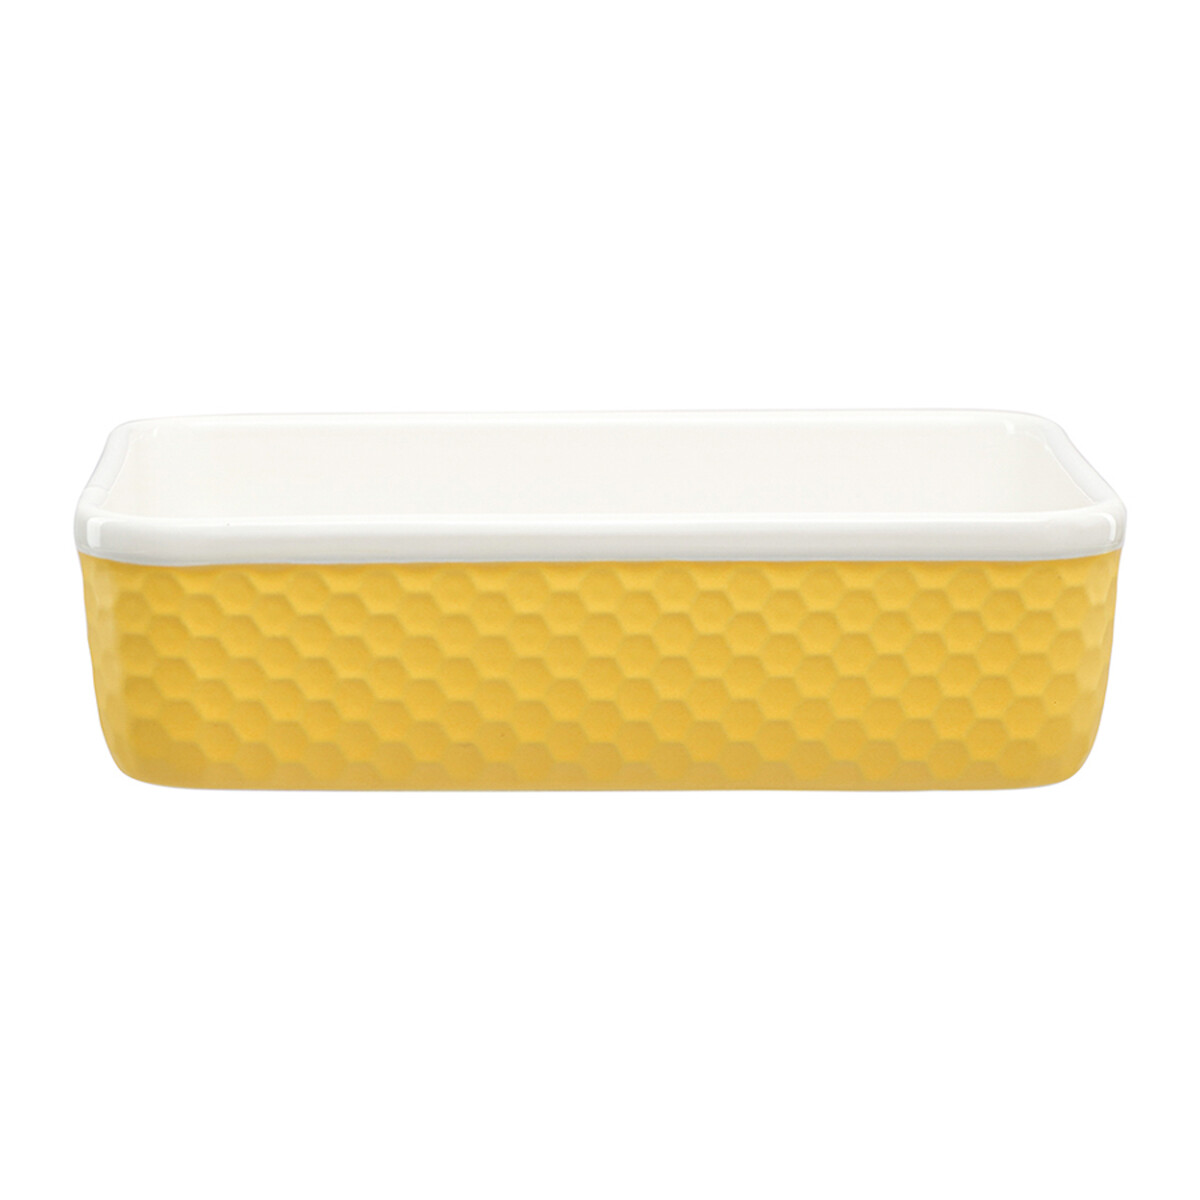 Блюдо для запекания Marshmallow 216х165 см единый размер желтый блюдо для запекания marshmallow 216х165 см кремовое единый размер бежевый